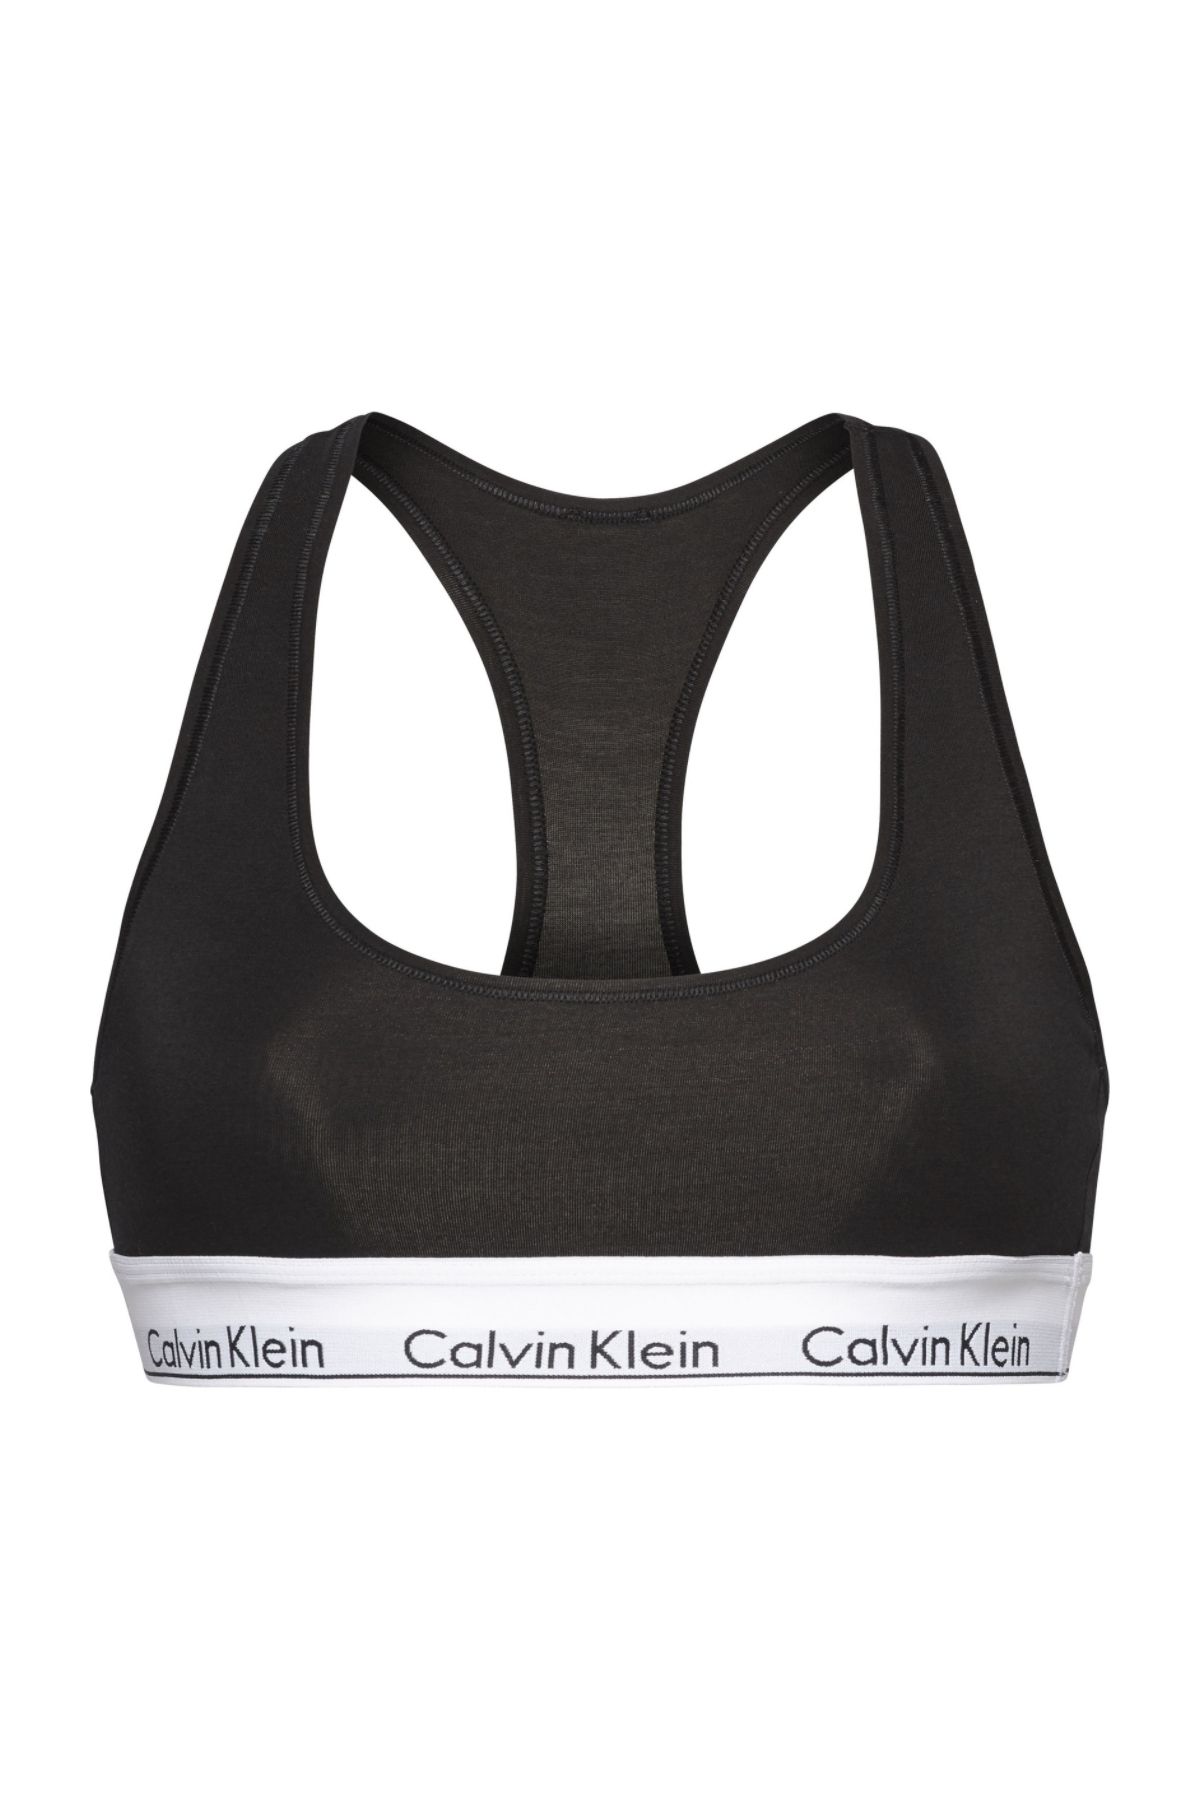 Calvin Klein Kadın Marka Logolu Elastik Bantlı Günlük Kullanıma Uygun Black Spor Sütyeni F3785e-001